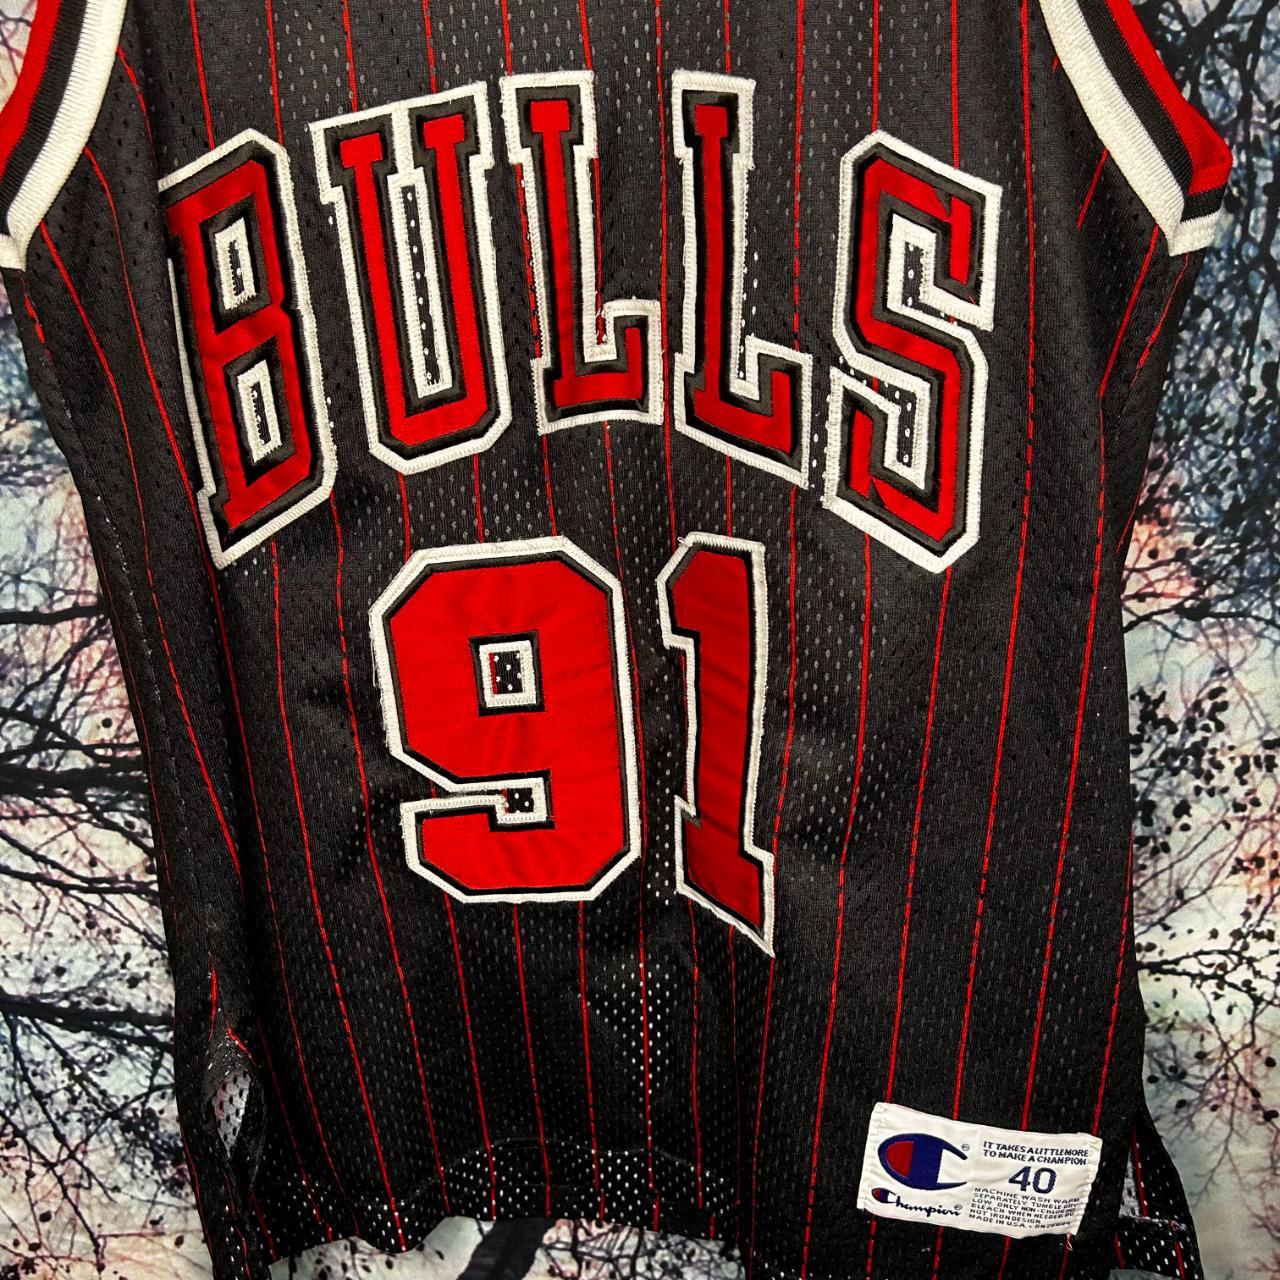 Dennis Rodman Chicago Bulls Jersey (chicago Script) Size 40